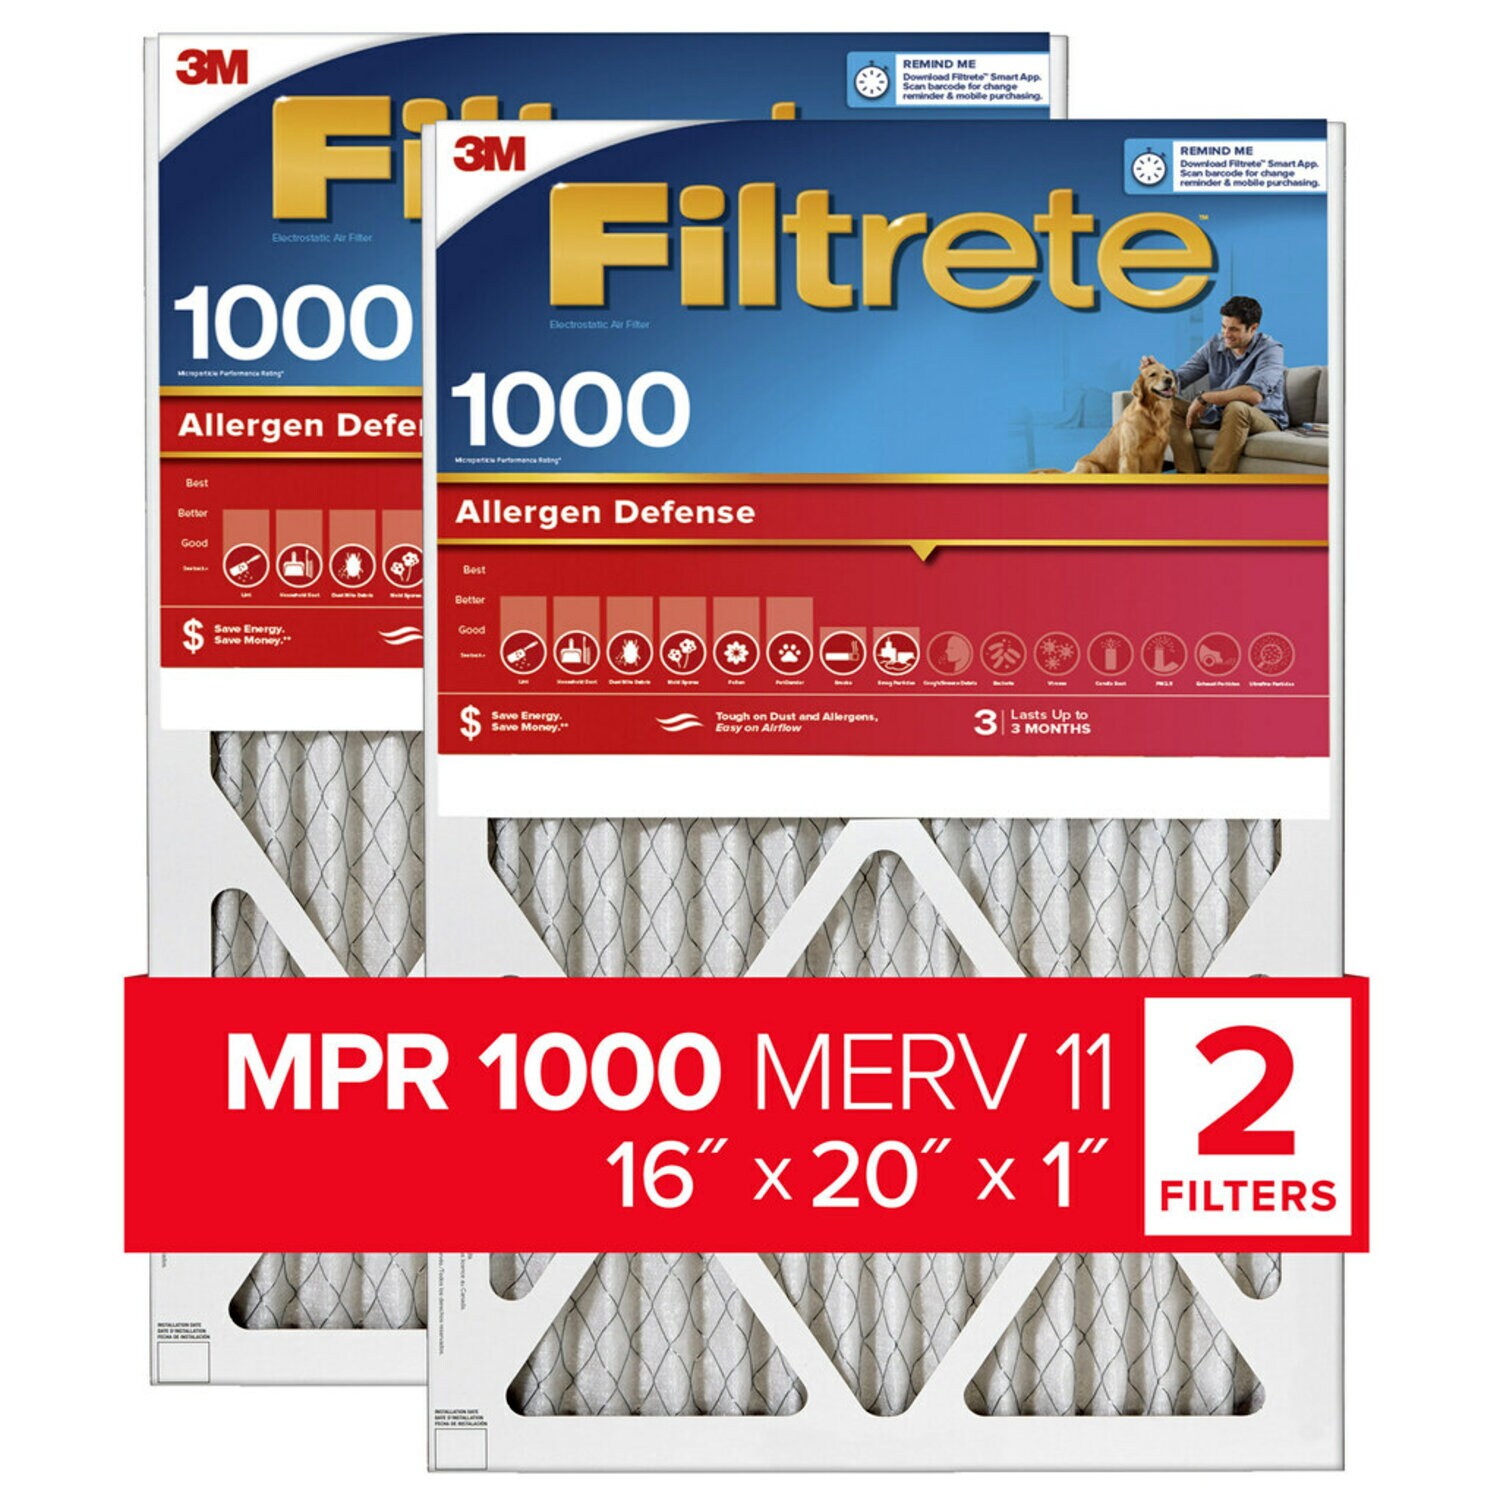 7100188267 - Filtrete Allergen Defense Air Filter, 1000 MPR, 9800-2PK-HDW, 16 in x
20 in x 1 in (40,6 cm x 50,8 cm x 2,5 cm)